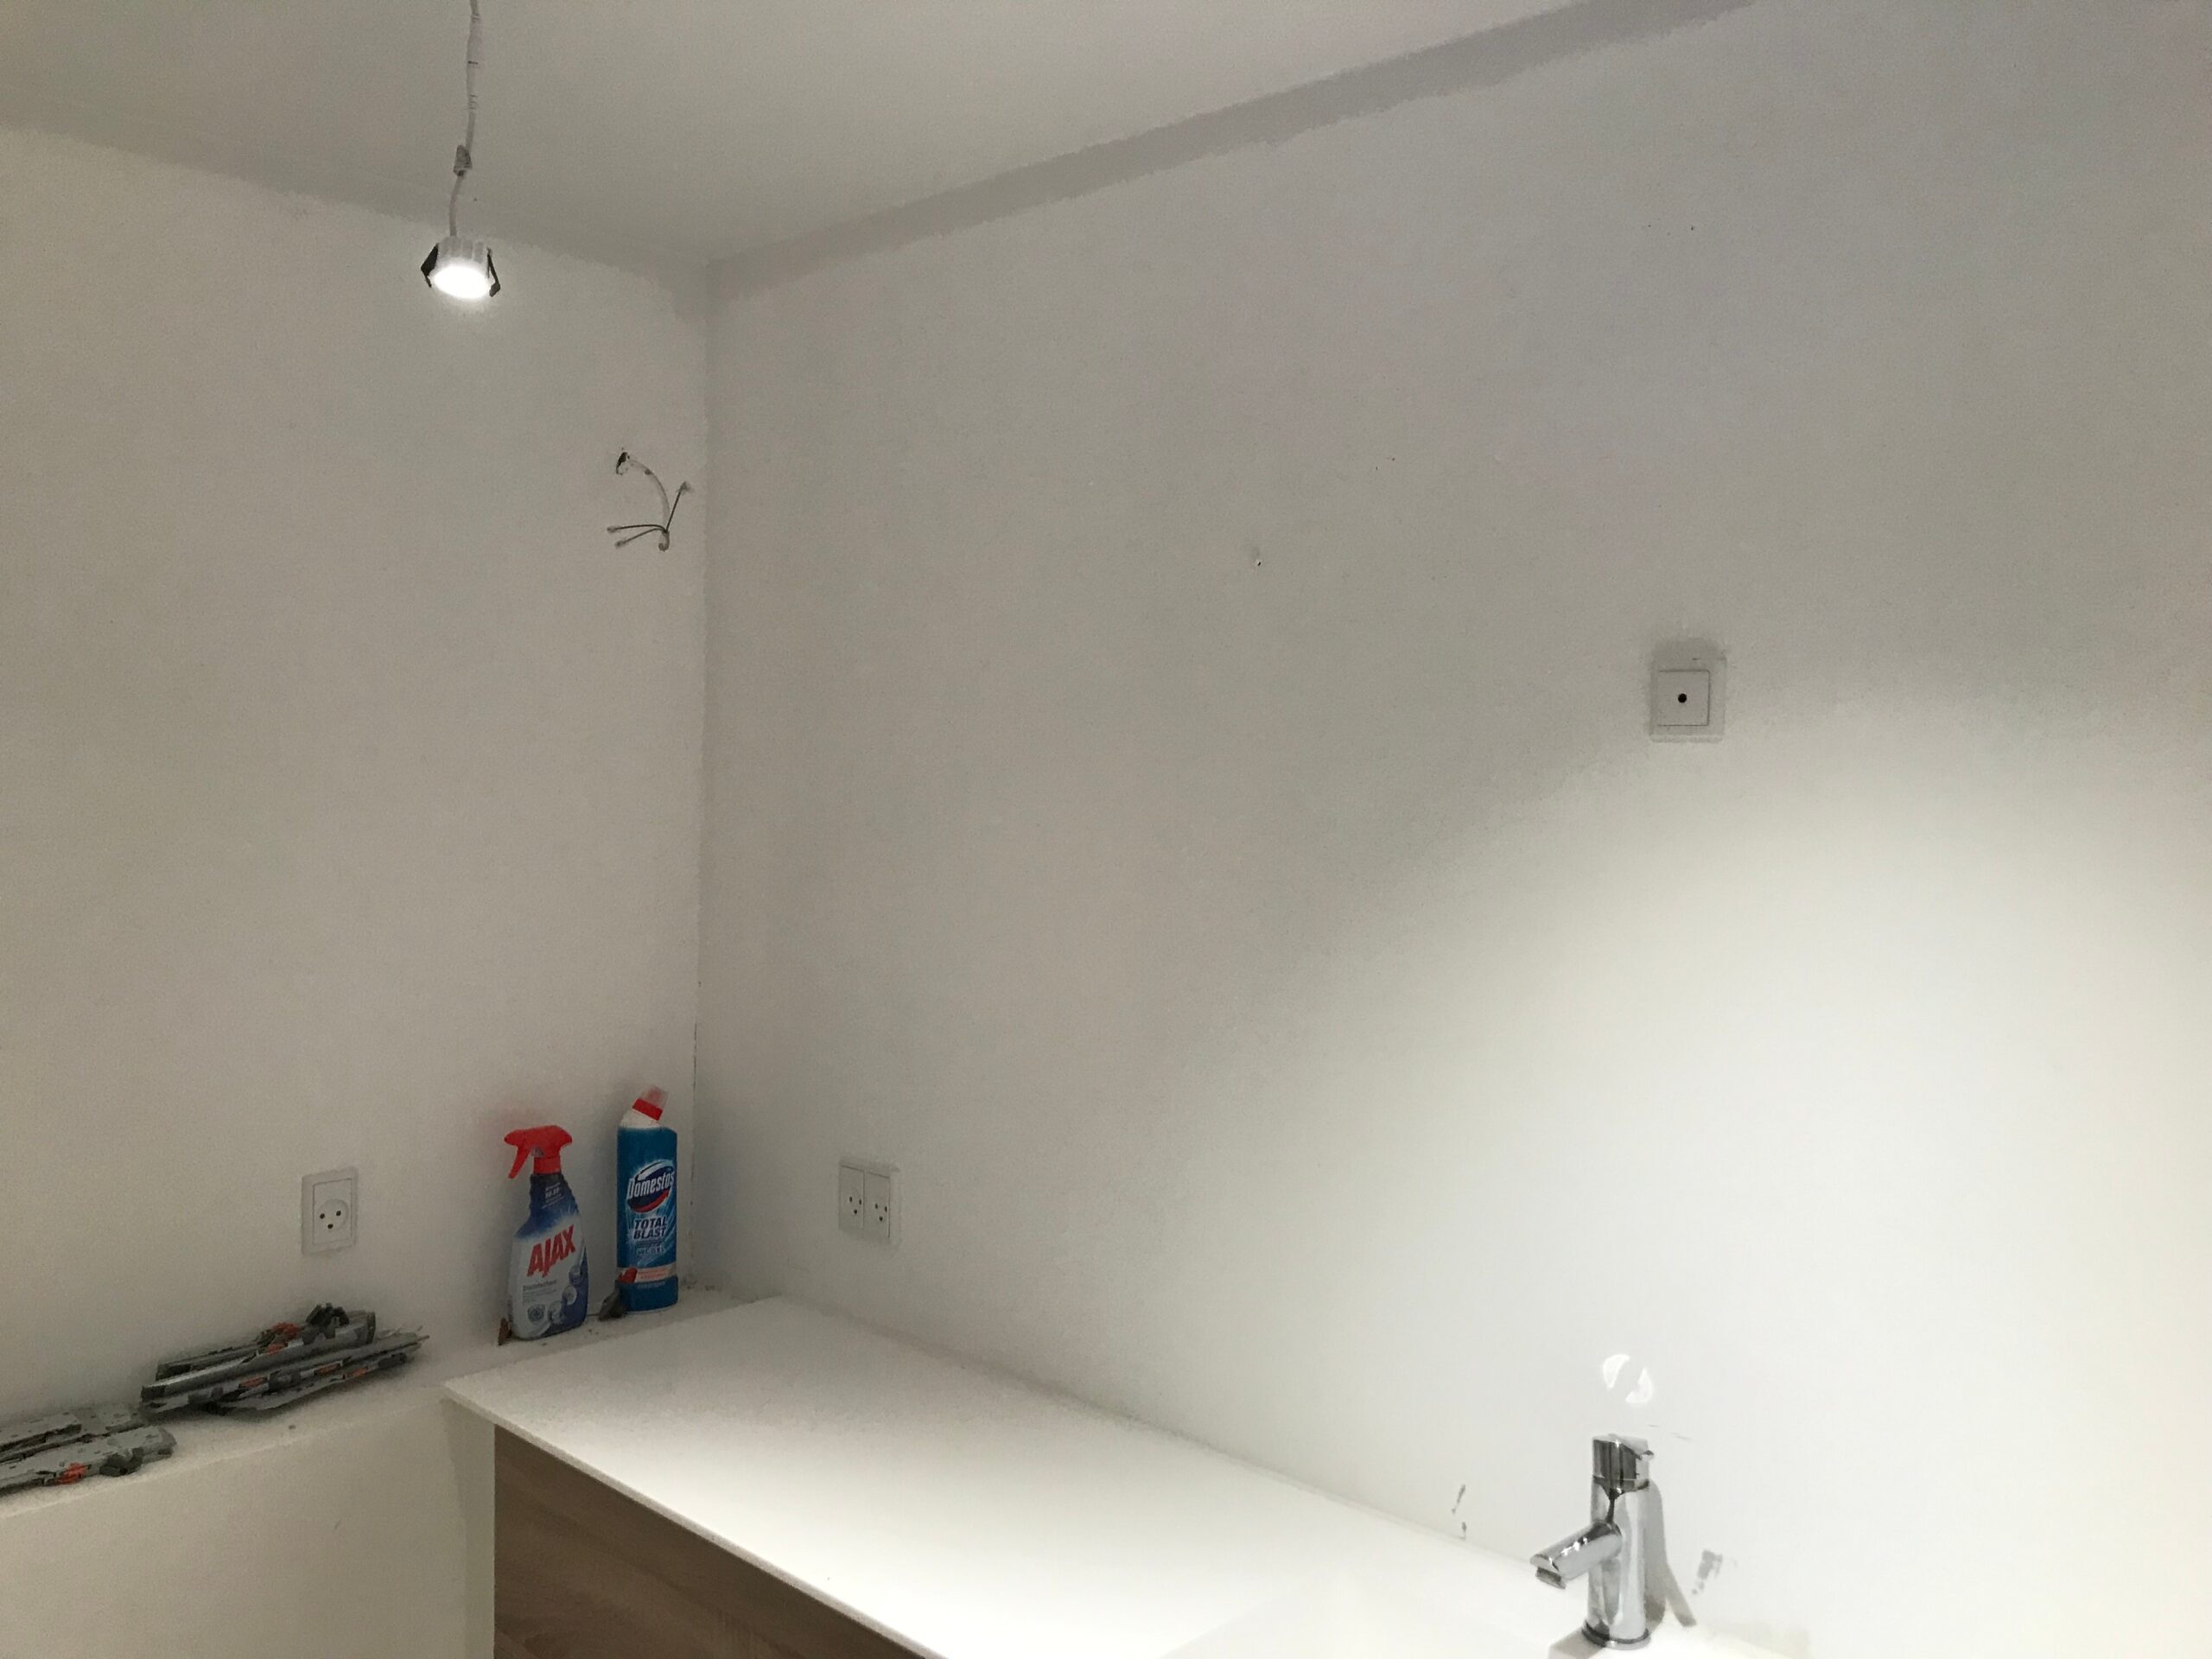 Lampeudtag og spot i badeværelse